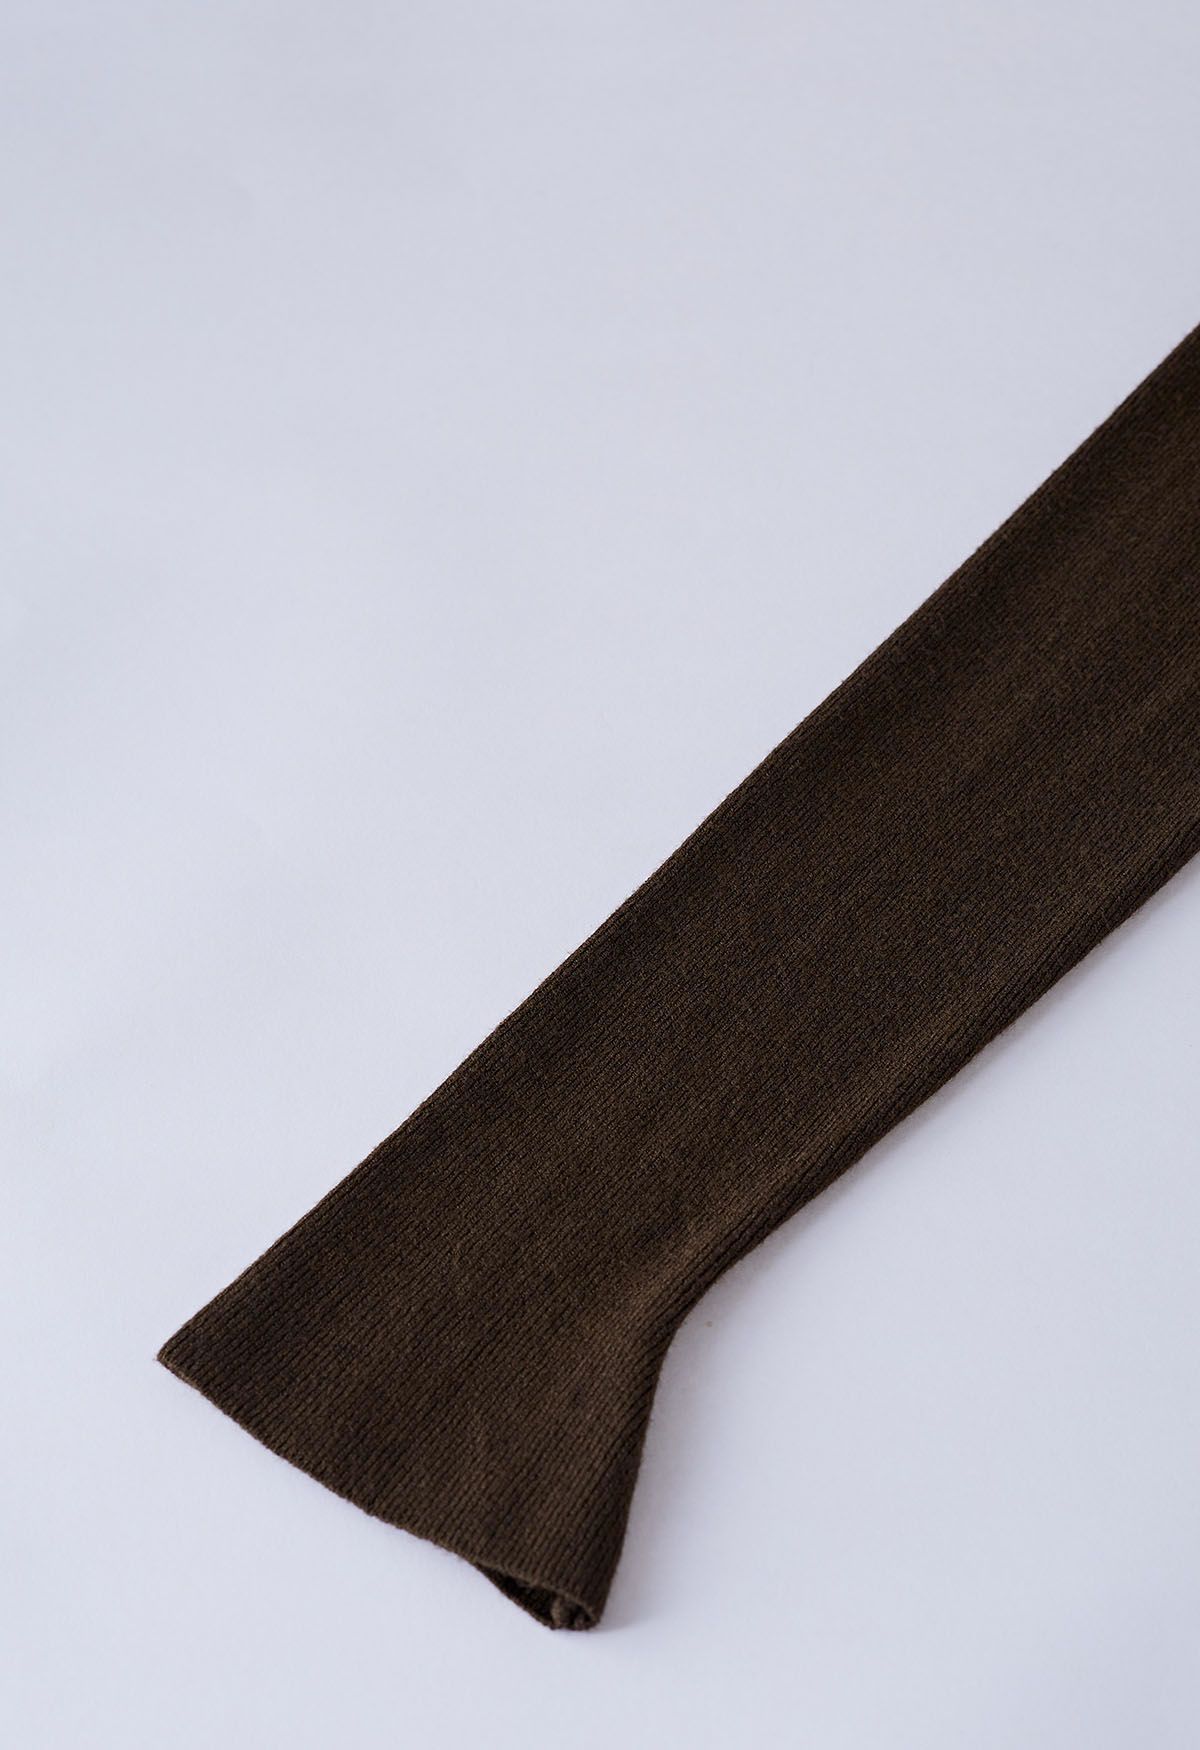 Tailliertes Strickoberteil mit eingekerbtem Ausschnitt in Braun